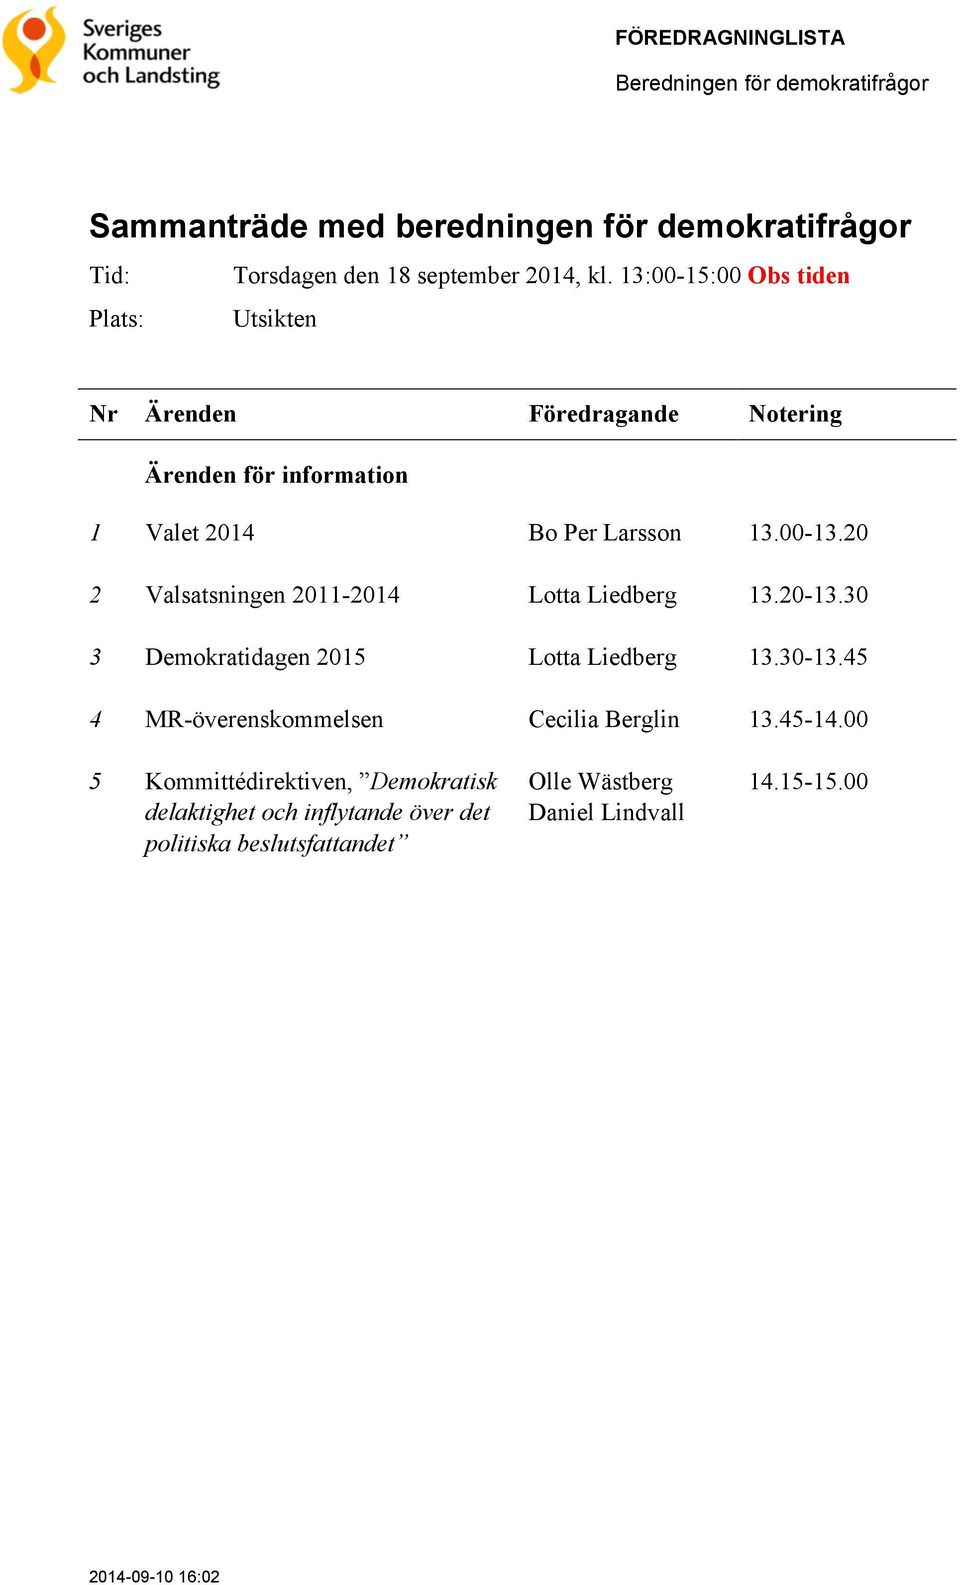 20 2 Valsatsningen 2011-2014 Lotta Liedberg 13.20-13.30 3 Demokratidagen 2015 Lotta Liedberg 13.30-13.